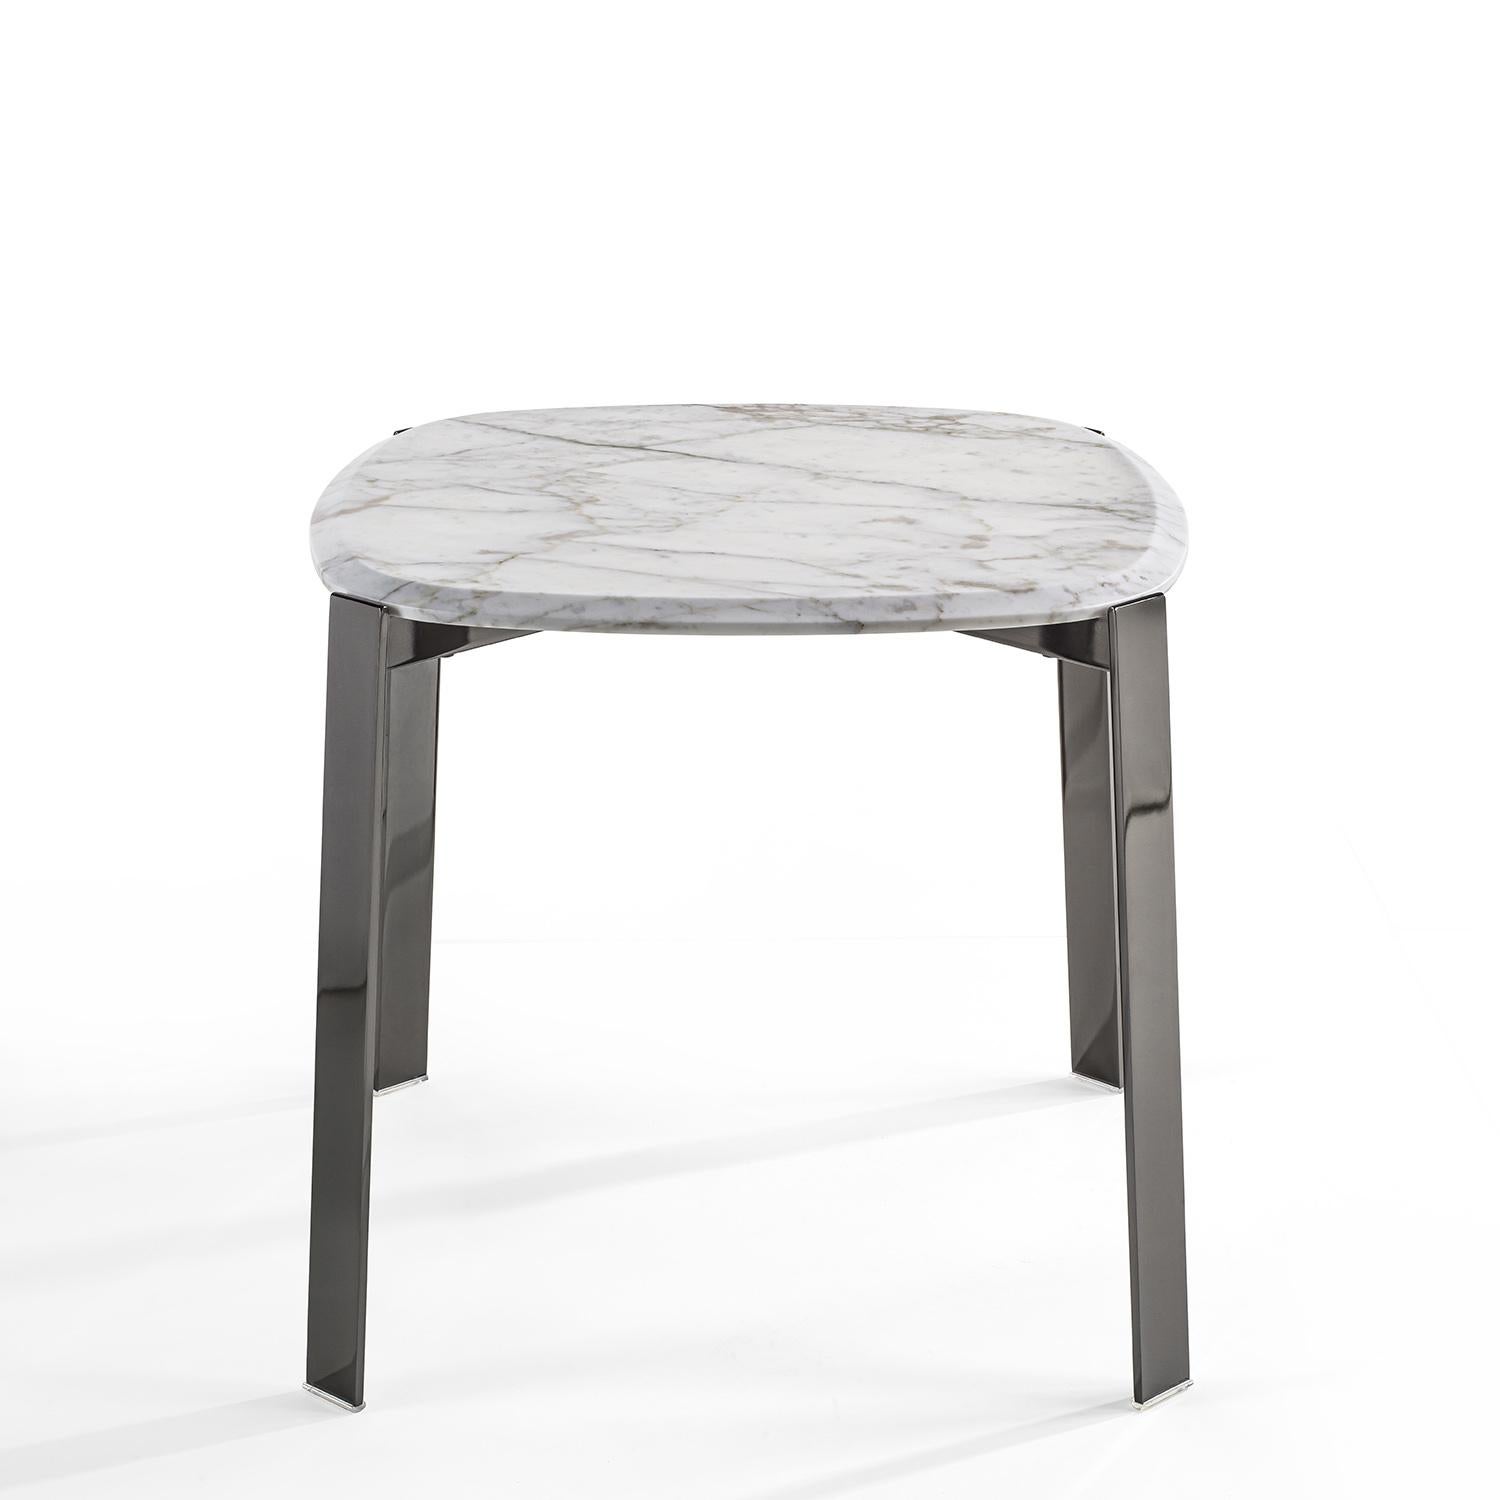 Table d'appoint Peter White en métal chromé
et avec un plateau en marbre blanc calacatta.
Egalement disponible en marbre noir sahara ou avec
plan en marbre gris carnico, sur demande.